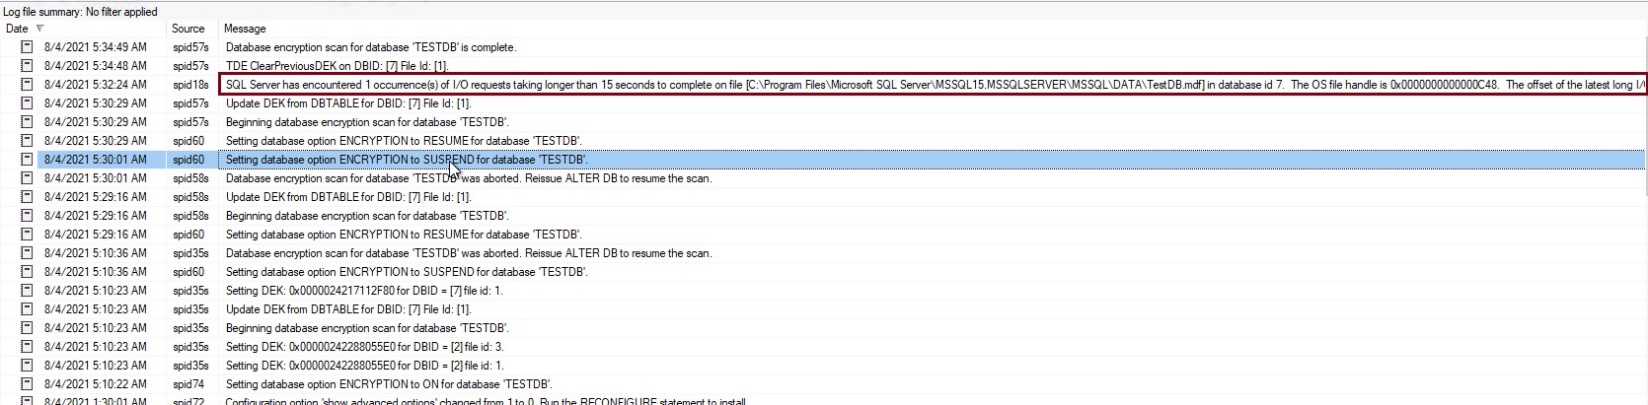 SQL Server error log for TDE SCAN